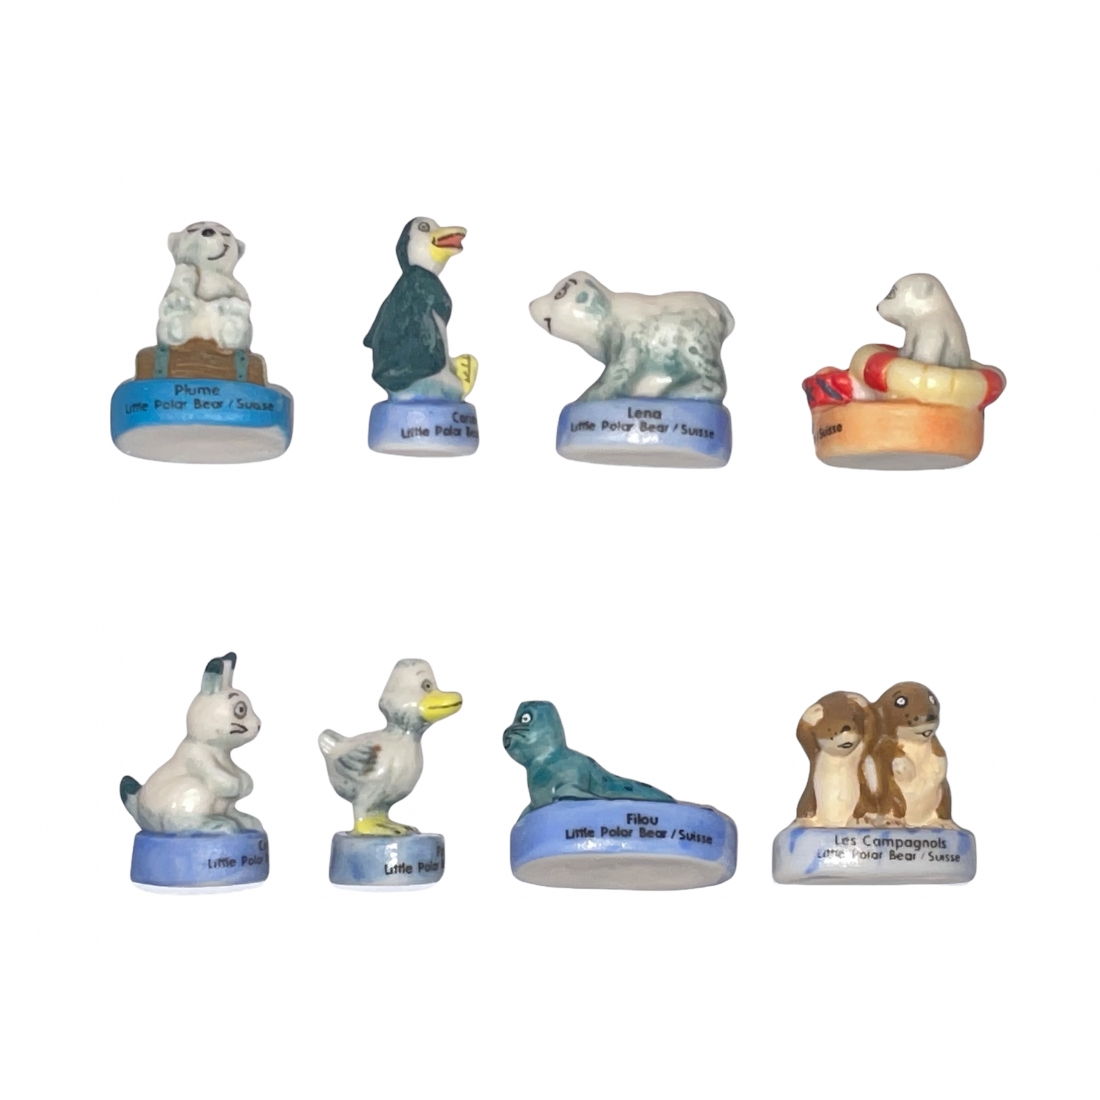 Série complète de 8 fèves Figures royales - Fabofolie's.com